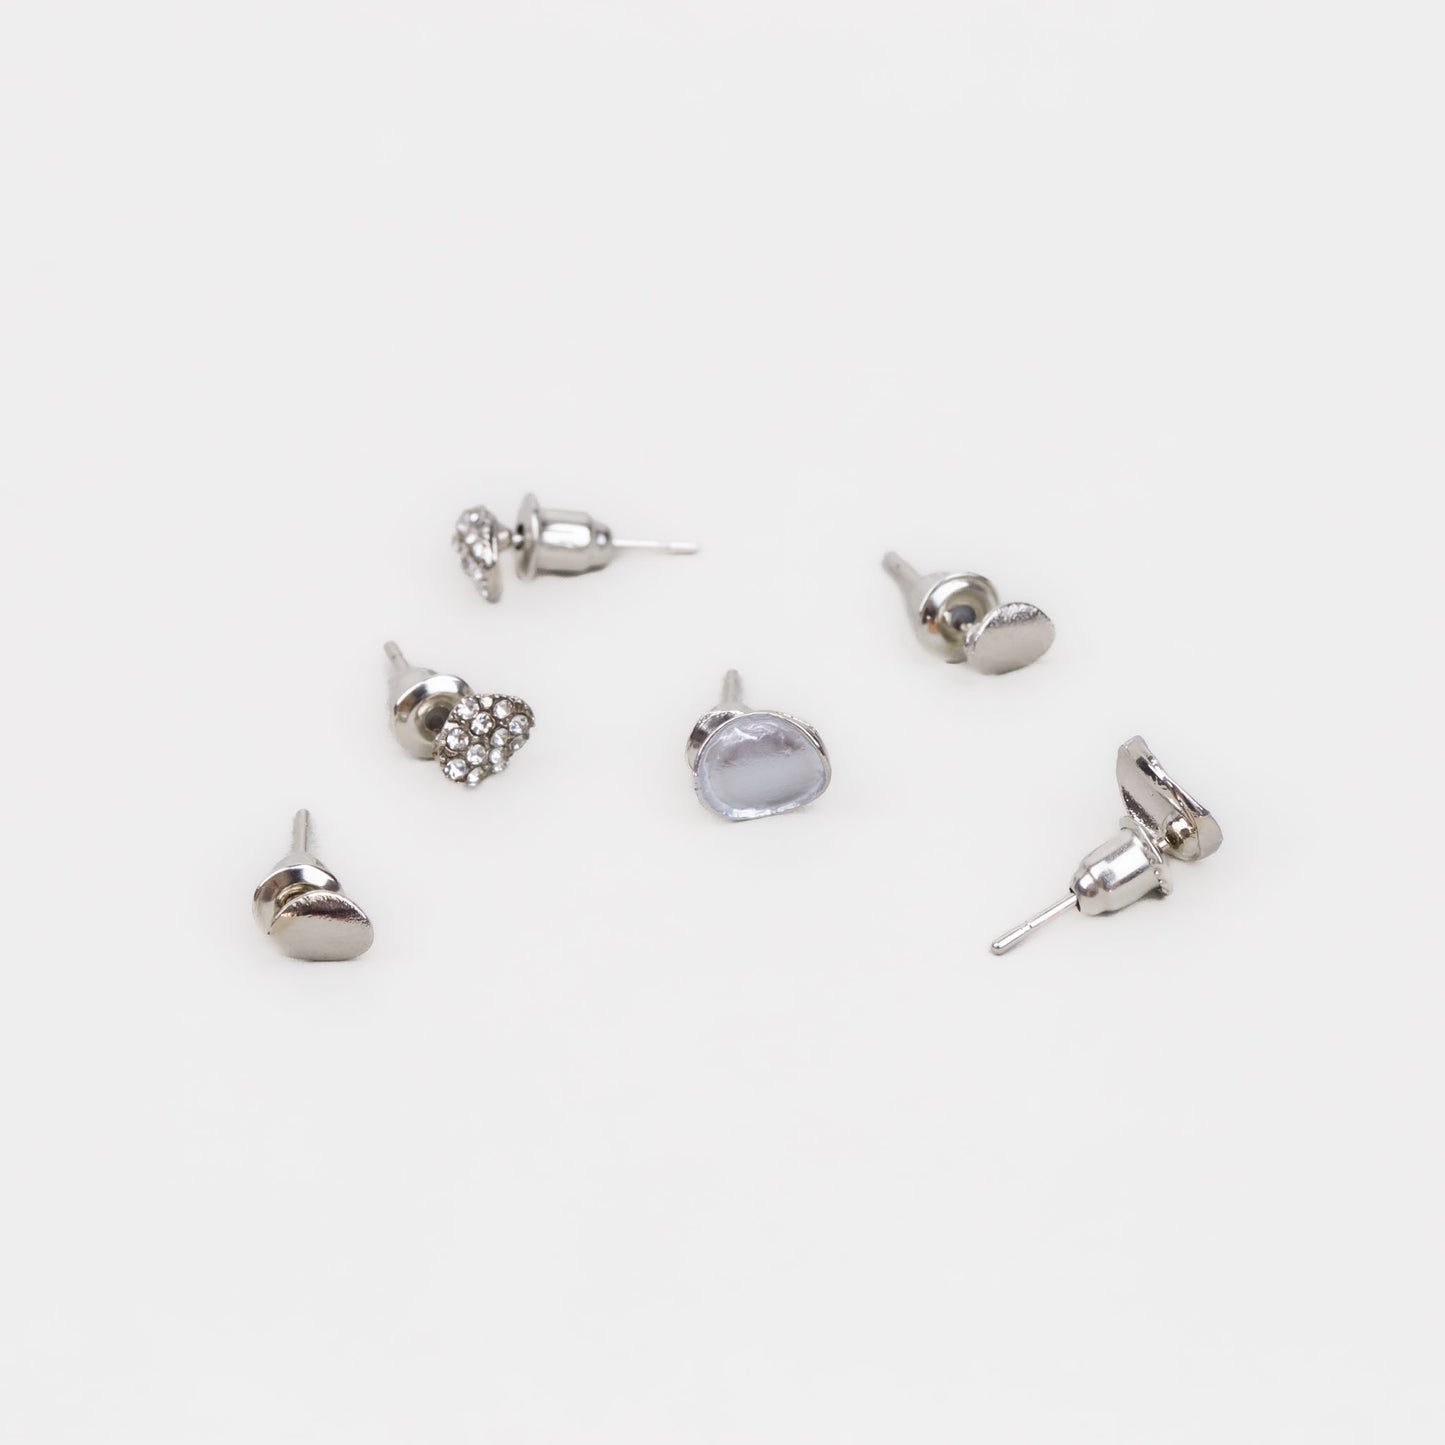 Cercei mici argintii în stil minimal cu ștrasuri, set 3 perechi